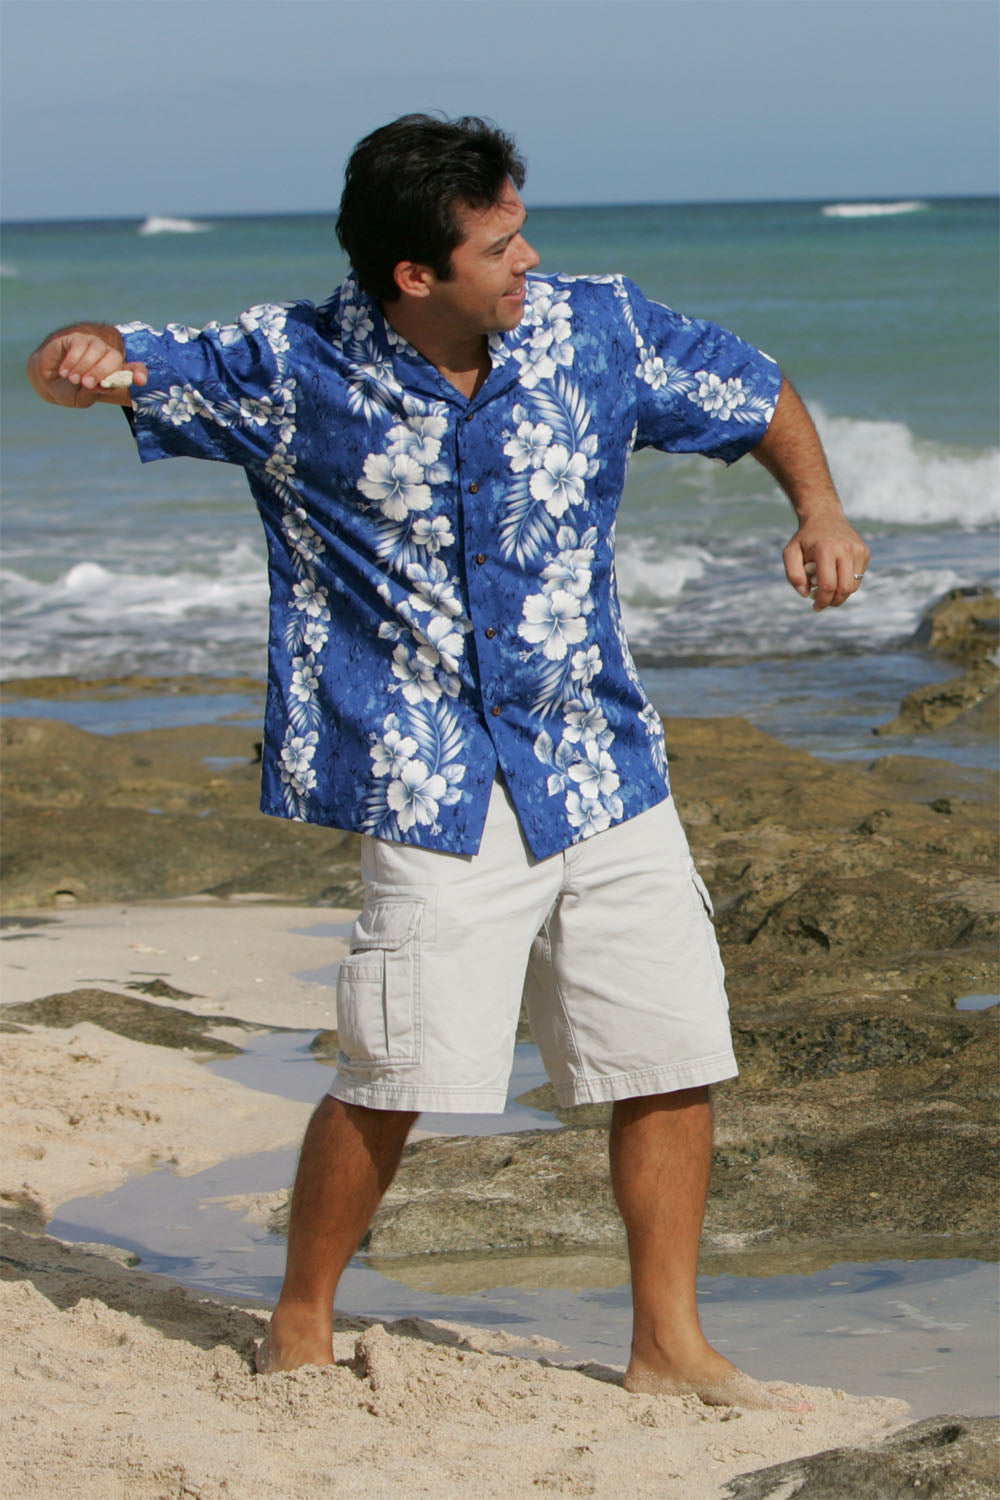 Dave rock skipping in 100% cotton Aloha shirt